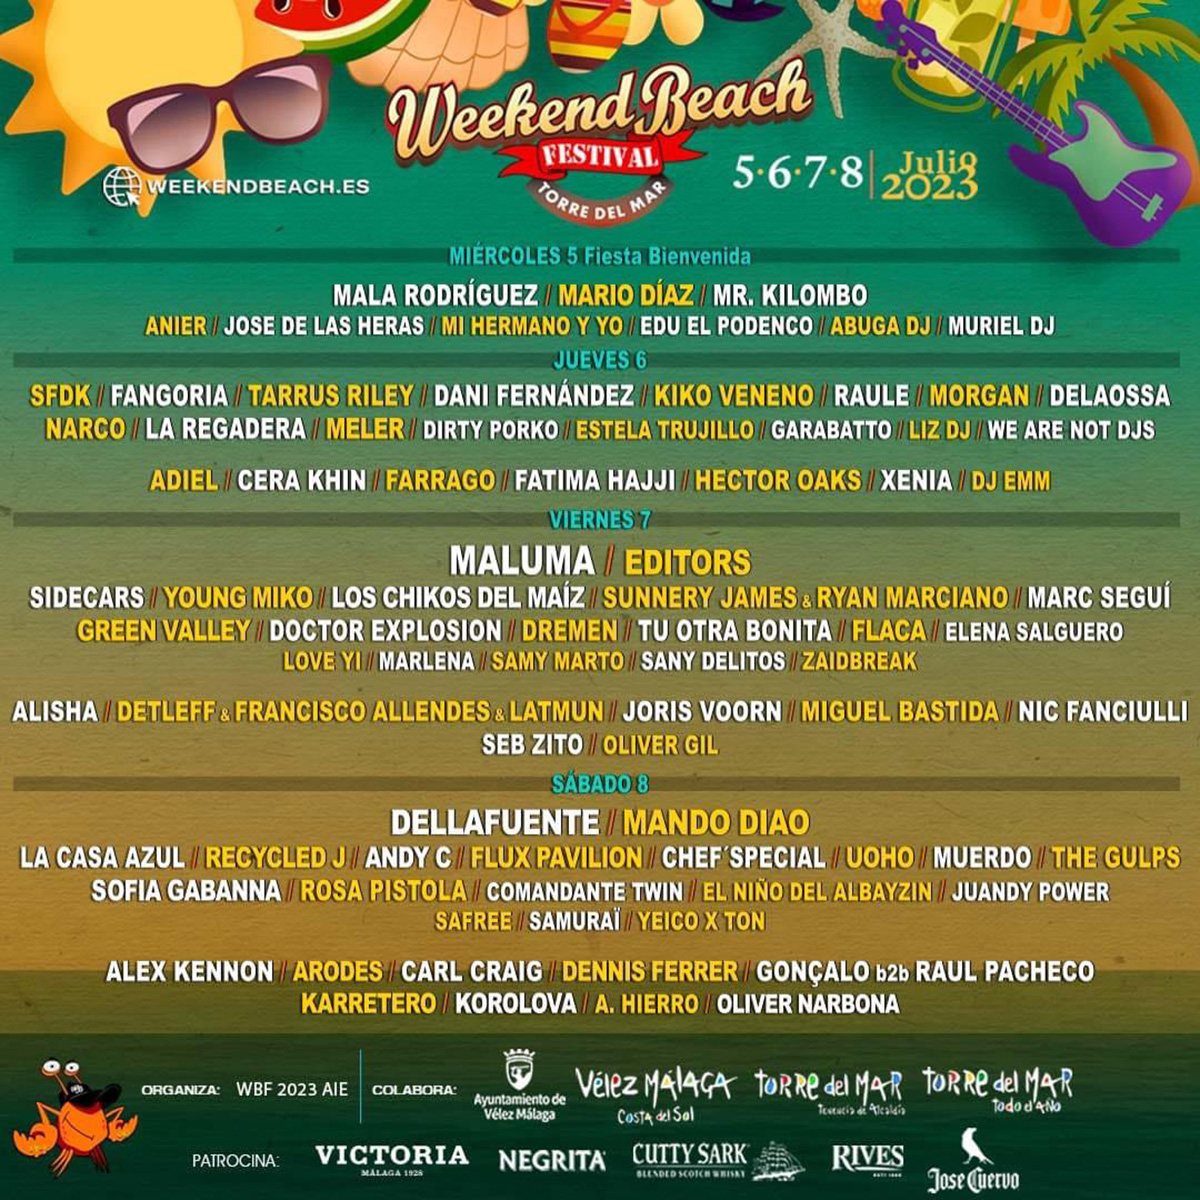 Weekend Beach lineup poster